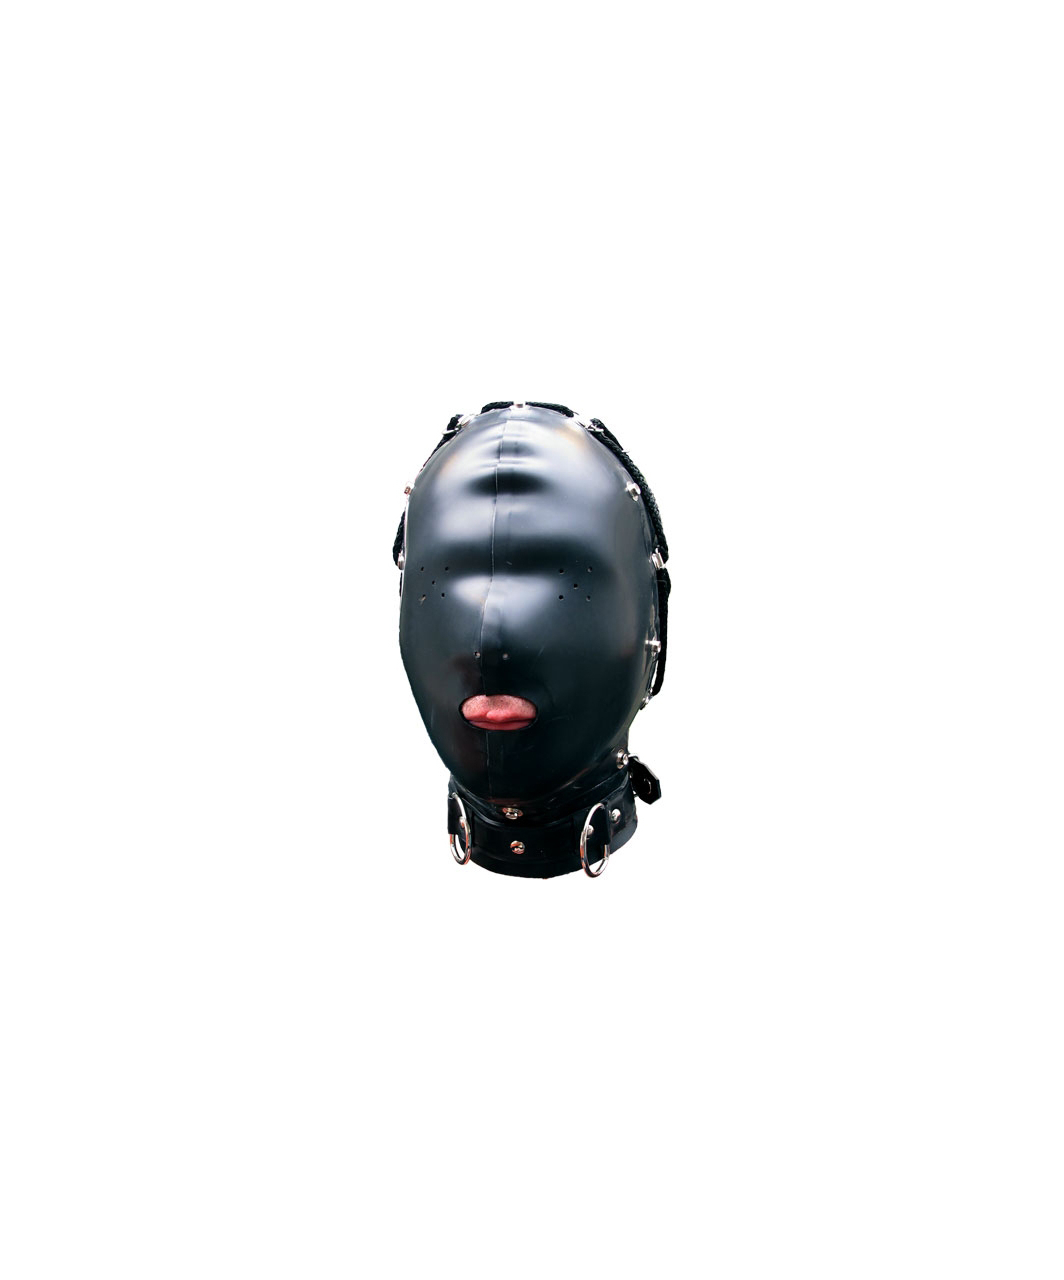 Mister B gumijas maska ar atverēm